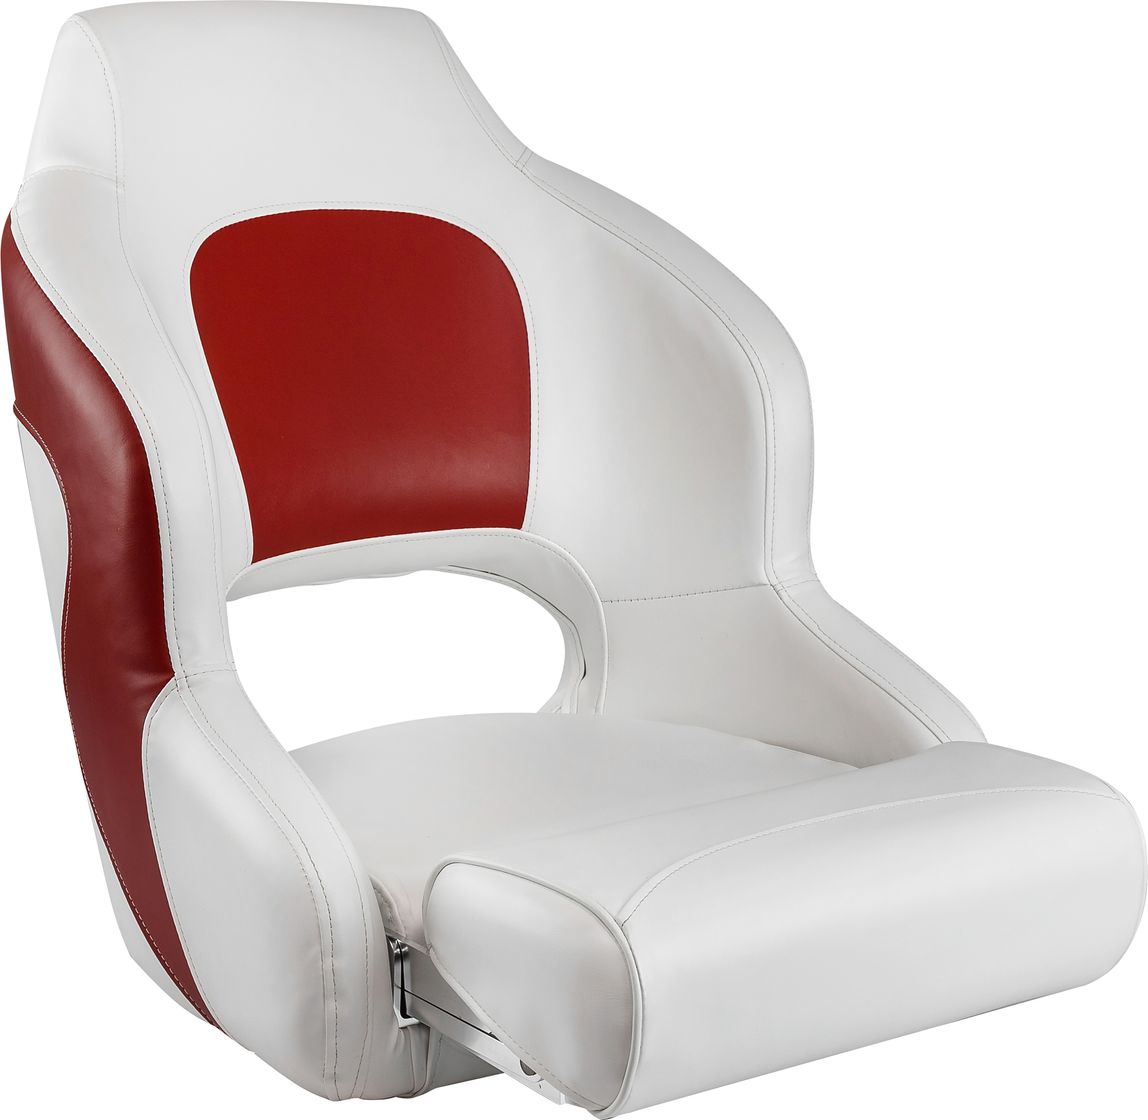 Кресло с болстером Premium Captain's Bucket, обивка винил, цвет белый/красный, Marine Rocket 75177WR-MR